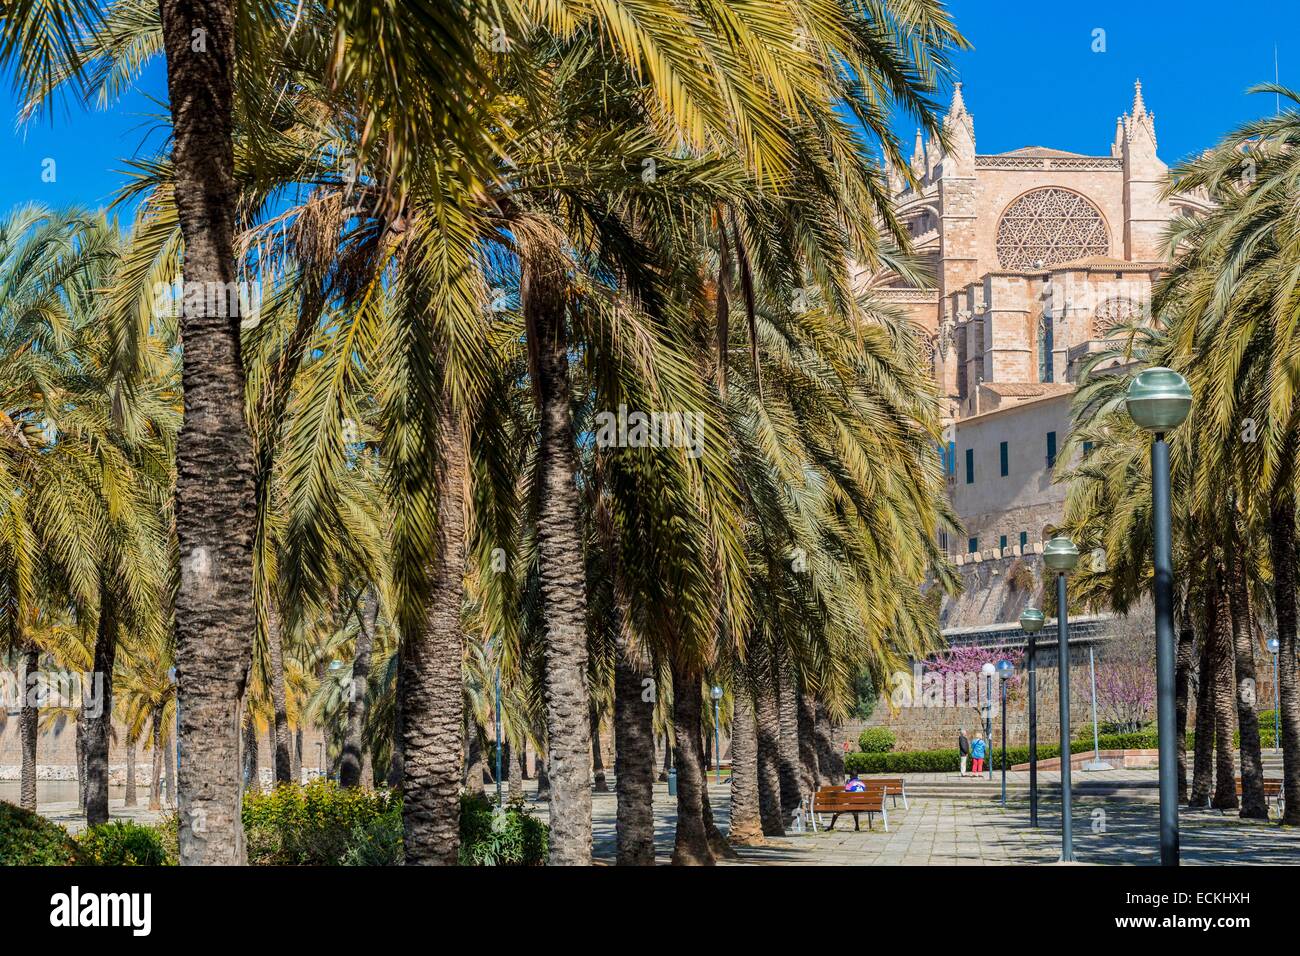 España, Islas Baleares, Mallorca, Palma de Mallorca, la catedral (La Seu) construido entre 1229 y 1601 y del gótico catalán Foto de stock